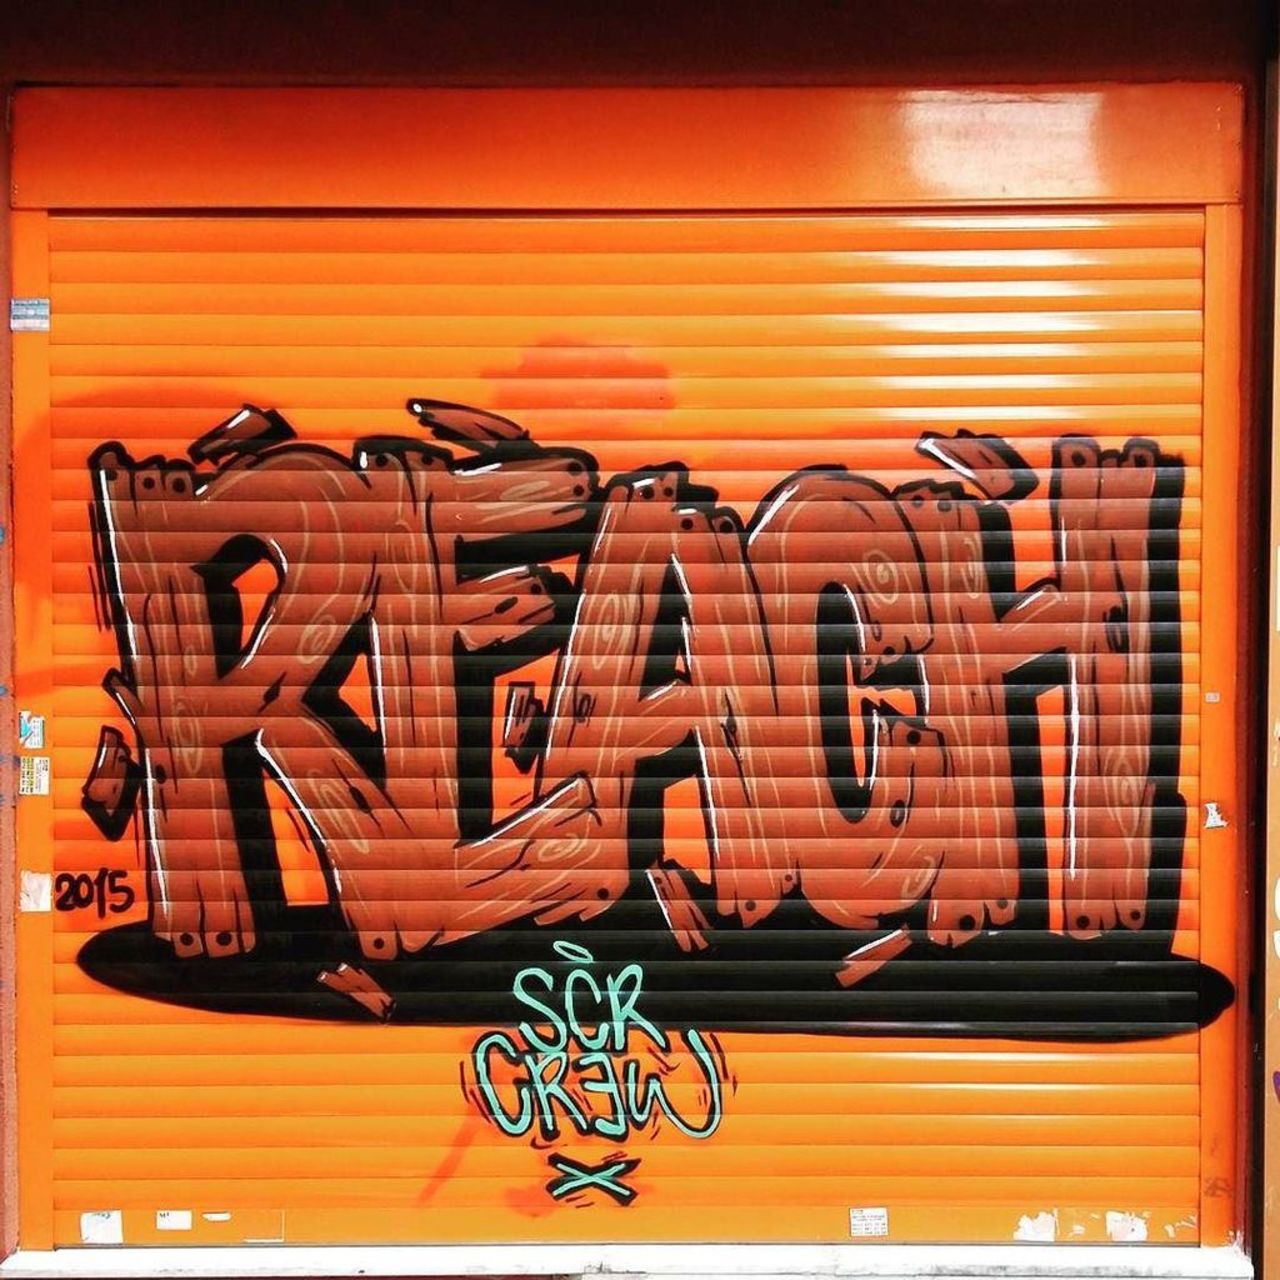 By @reacinsta @dsb_graff#dsb_graff @rsa_graffiti @streetawesome #streetart #urbanart #graffitiart #graffiti #instag… https://t.co/d1ti5mL0EN